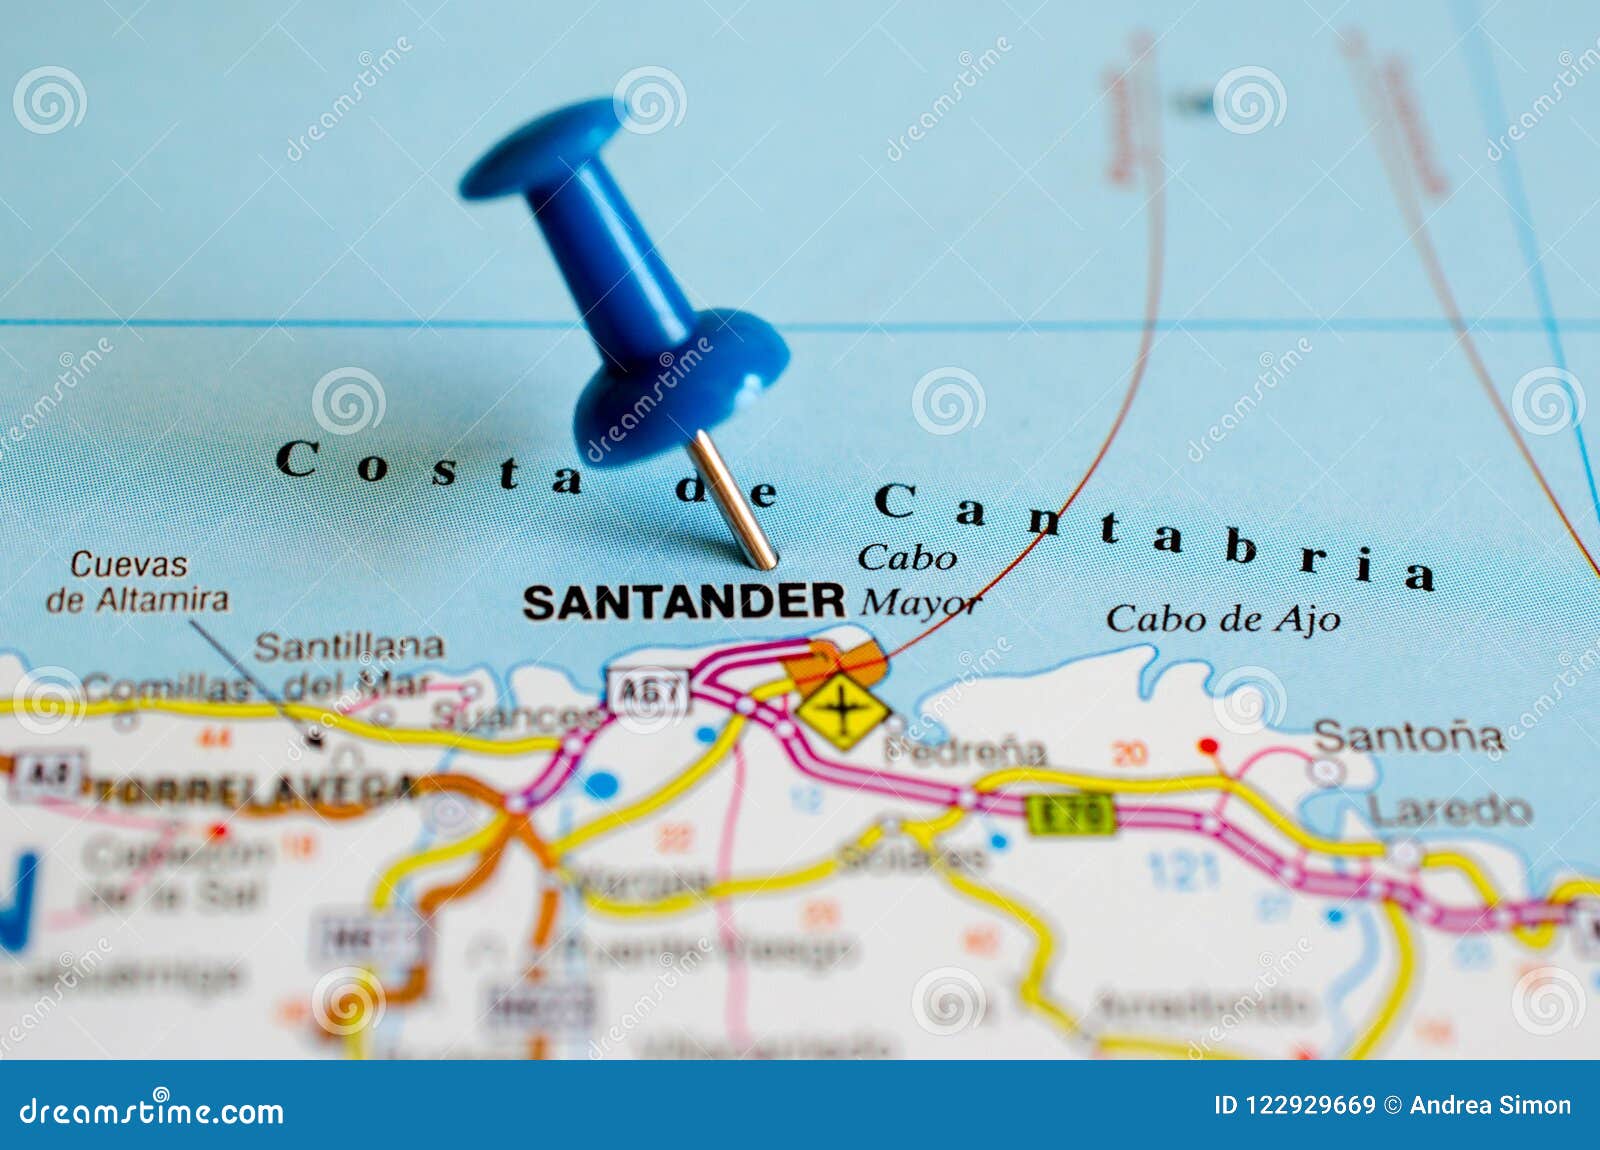 Santander carte